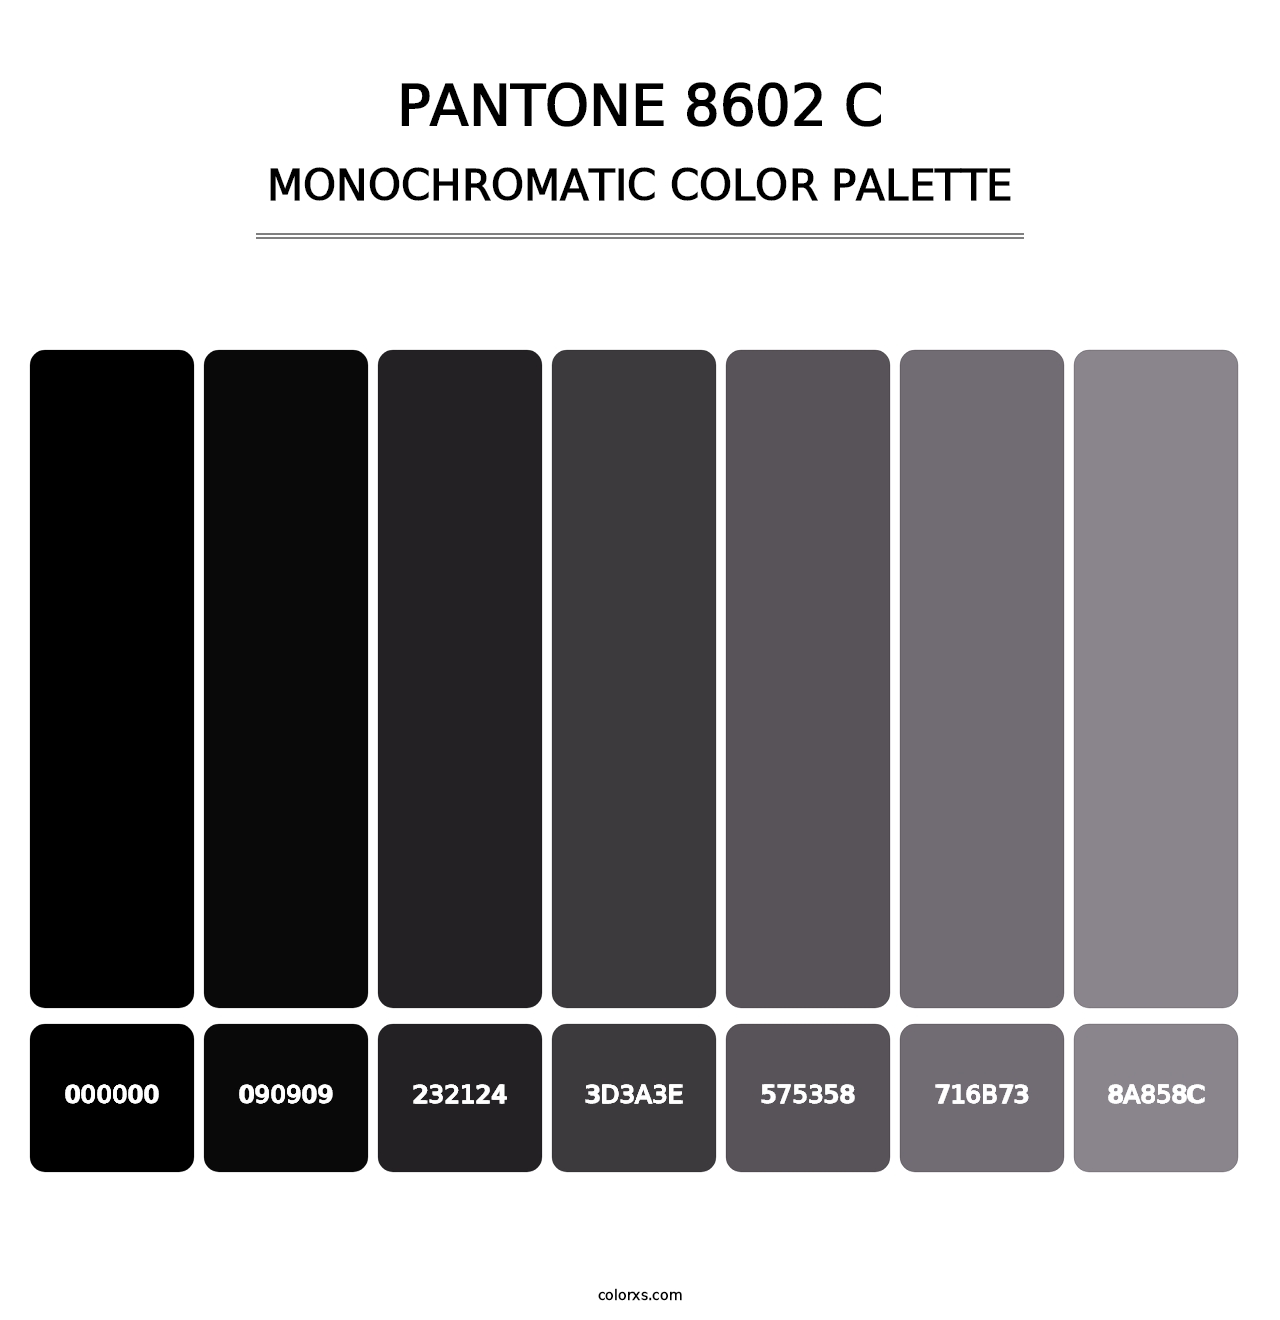 PANTONE 8602 C - Monochromatic Color Palette